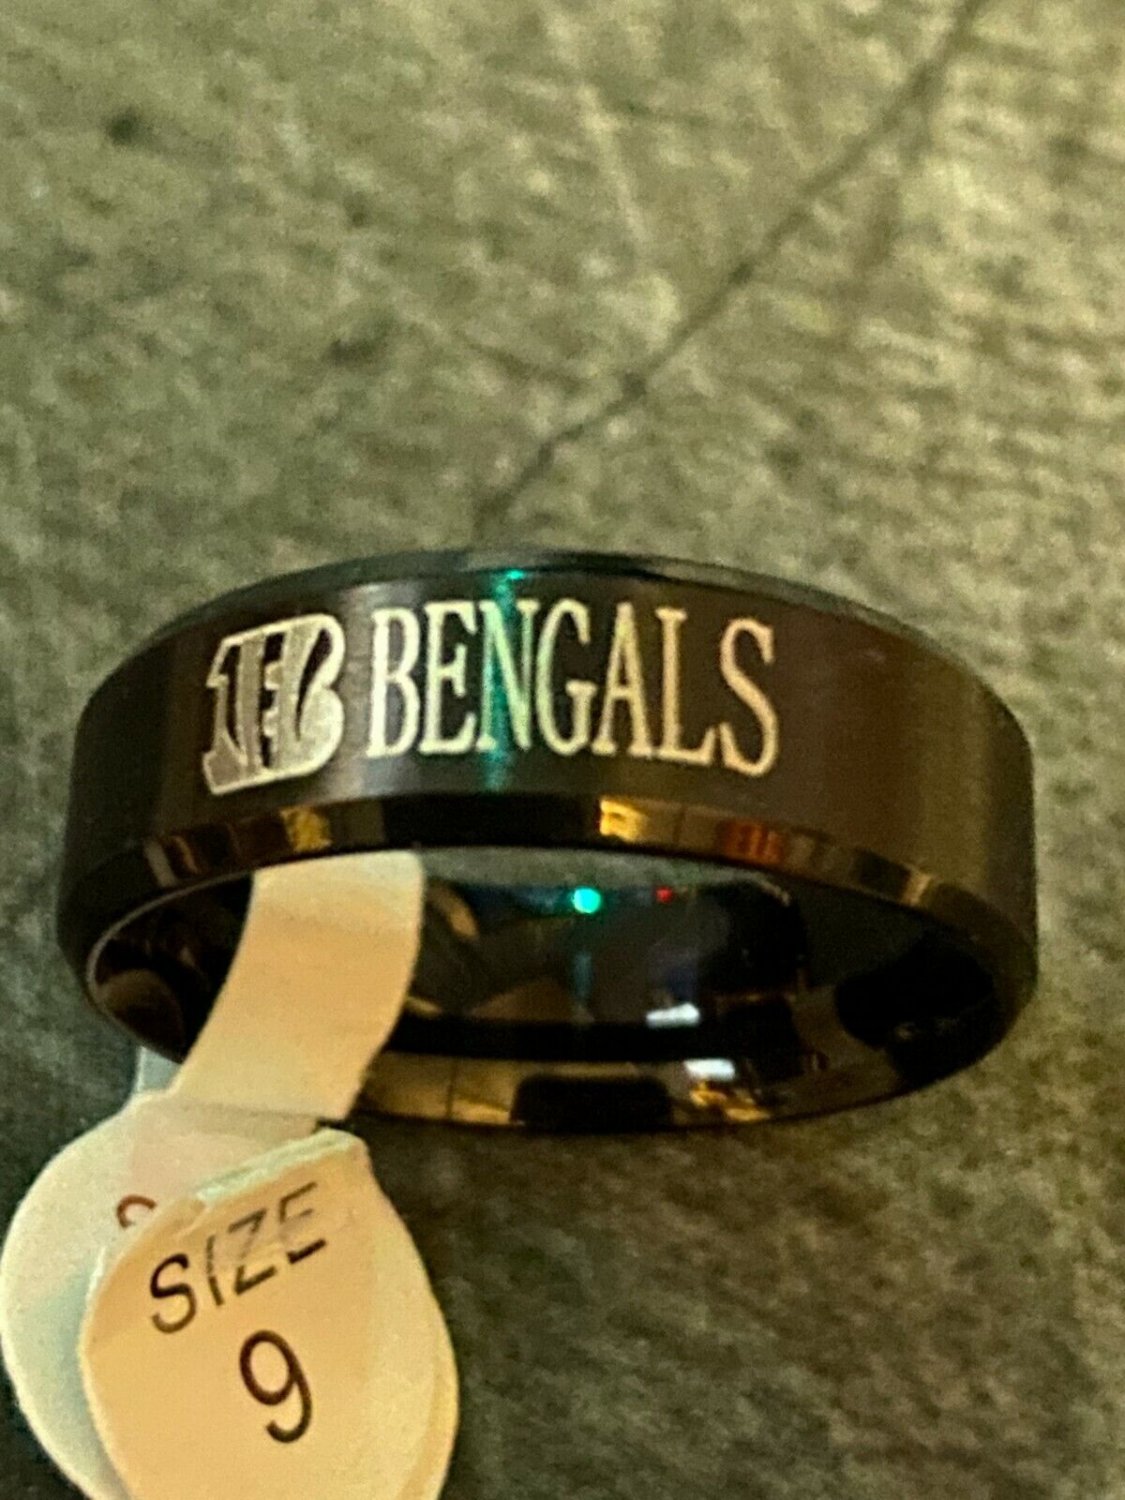 Cincinnati Bengals titanium ring size 9